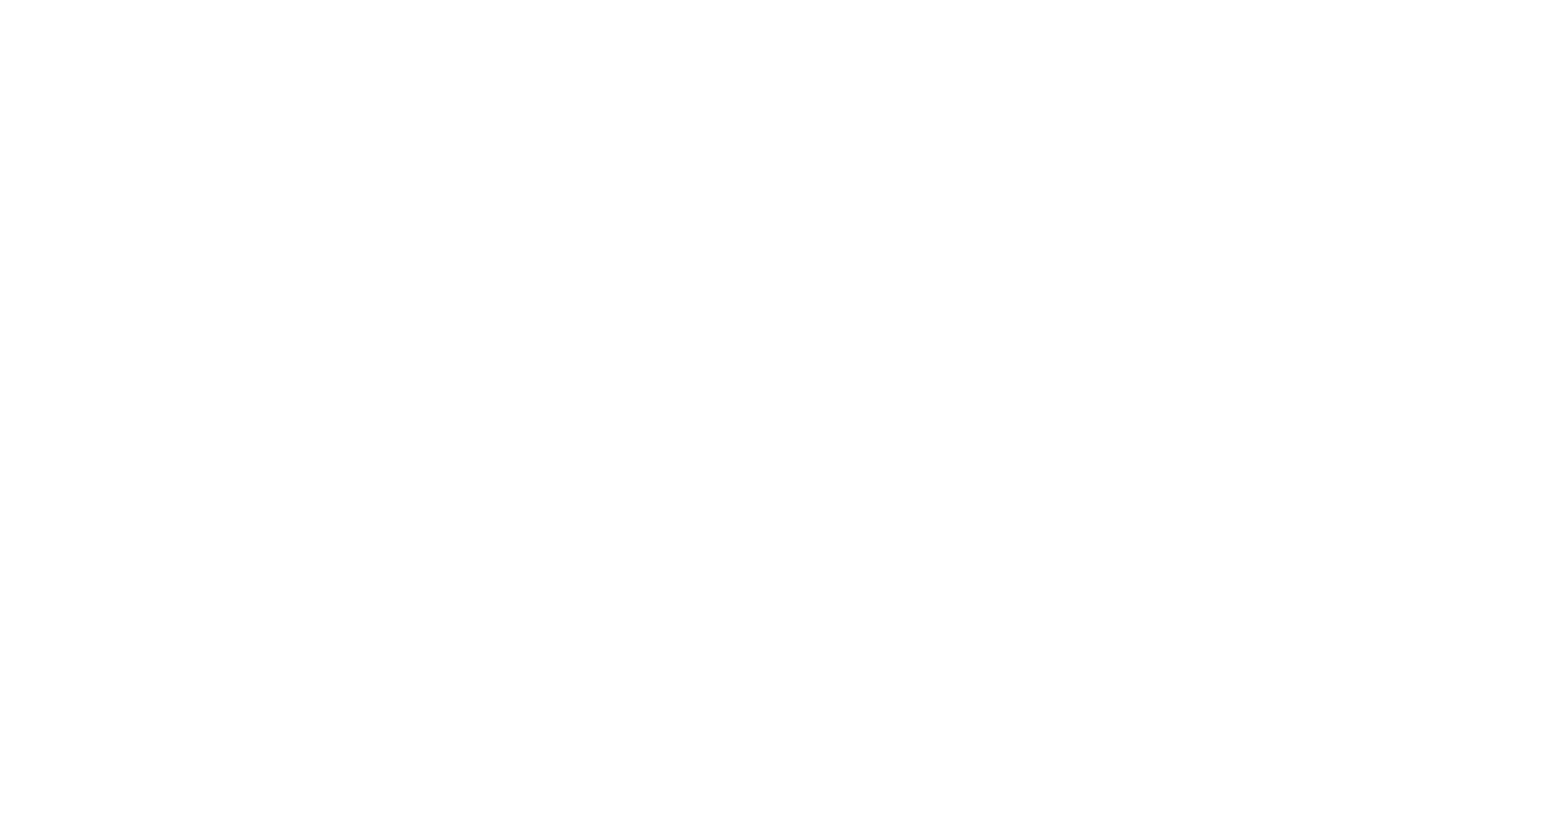 Reece Group logo grand pour les fonds sombres (PNG transparent)